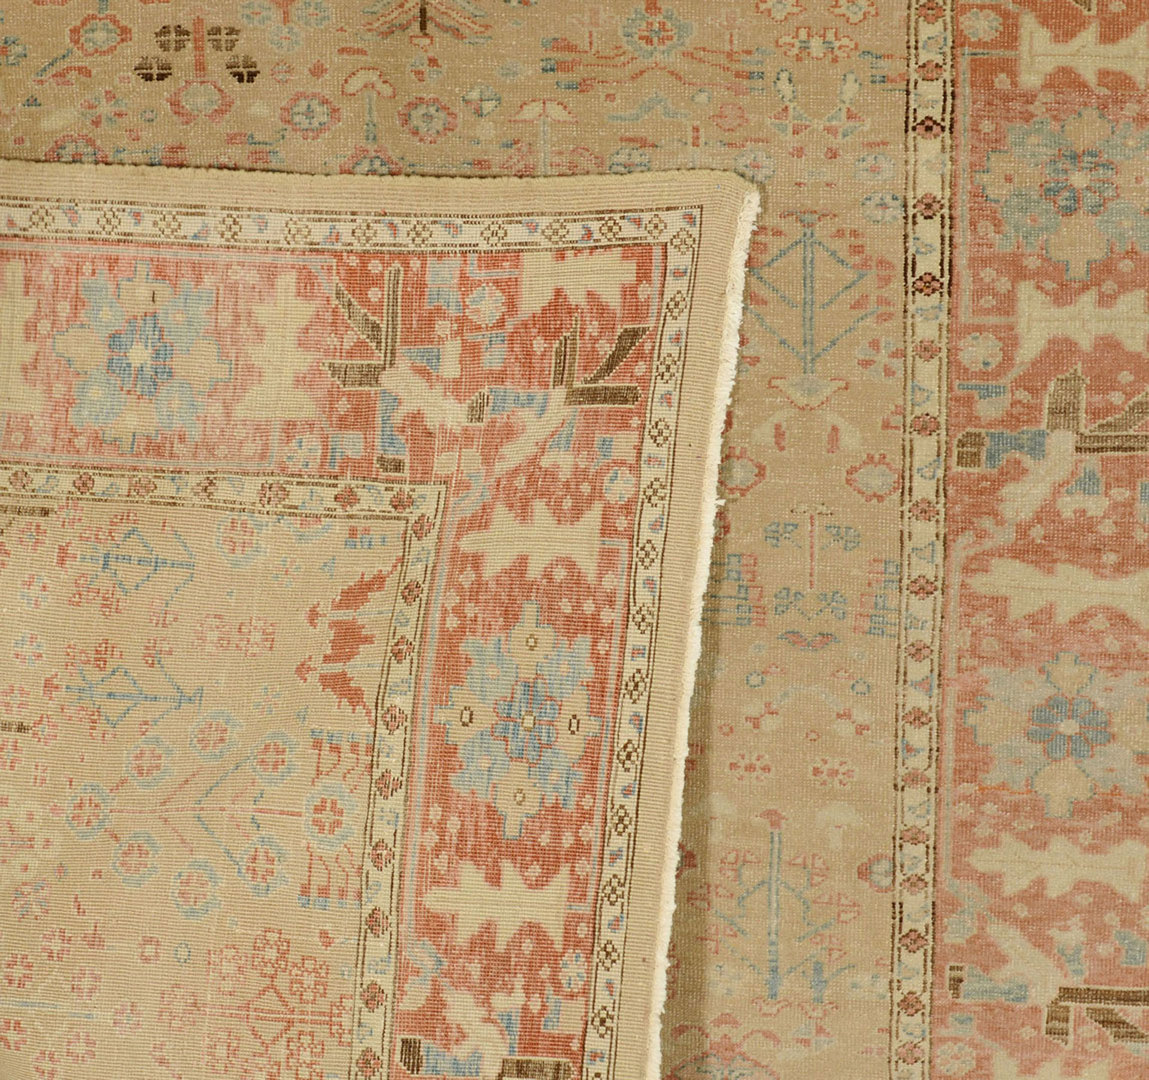 Lot 703: Egyptian Carpet, 7' 1" x 7' 3"